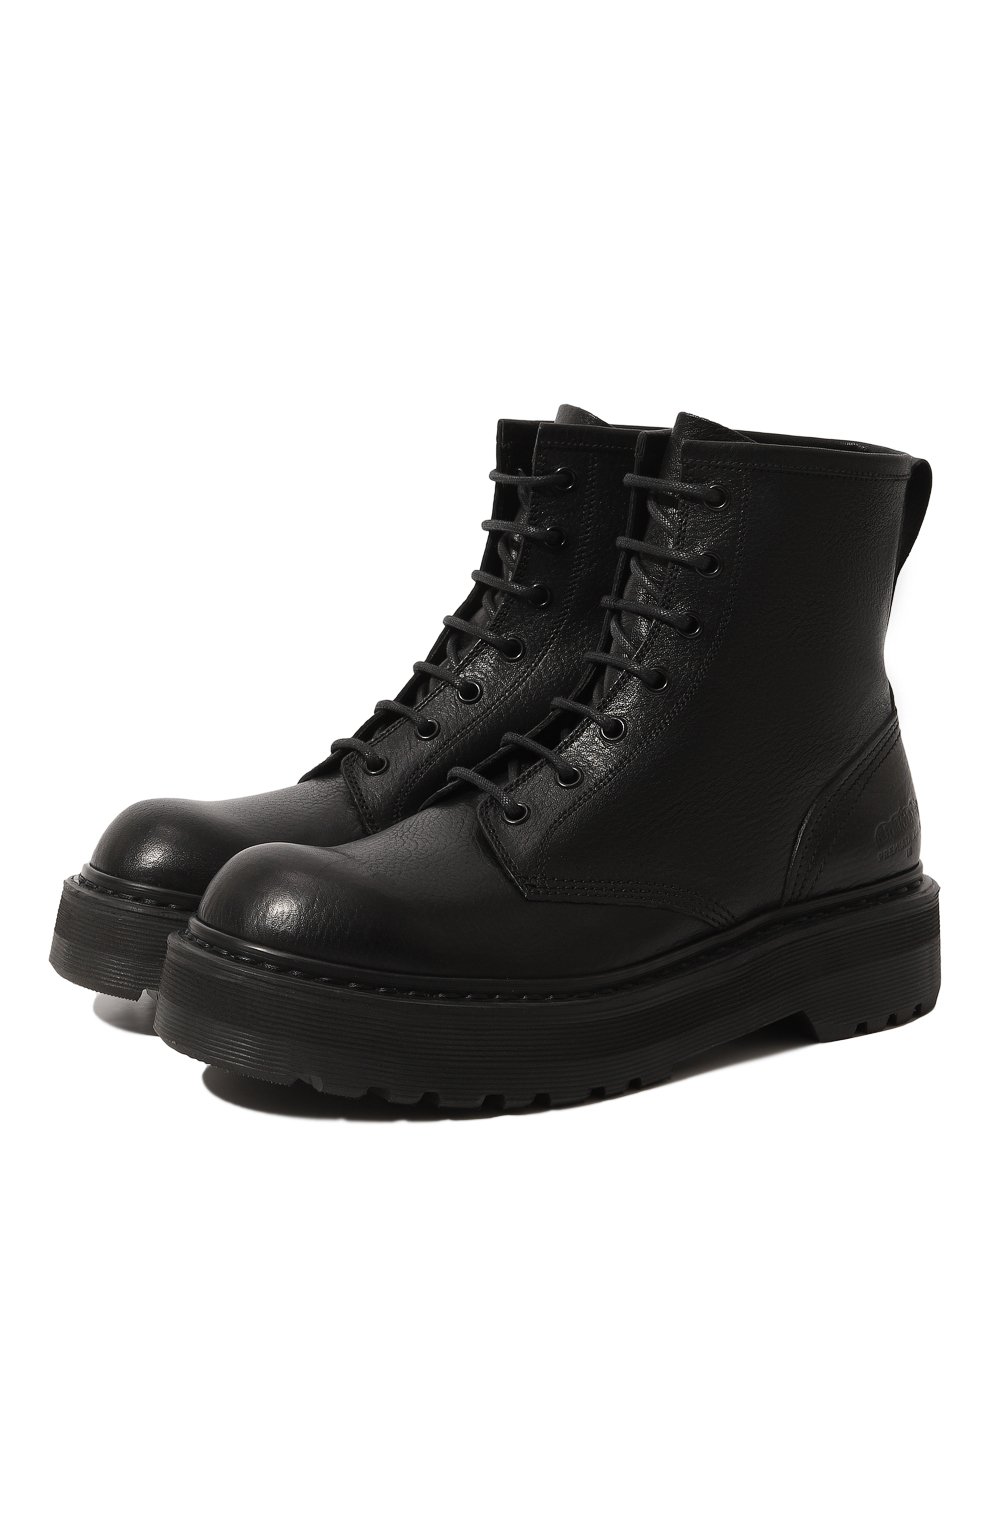 Кожаные ботинки Premiata M4973V/V0LANAT0, цвет чёрный, размер 37.5